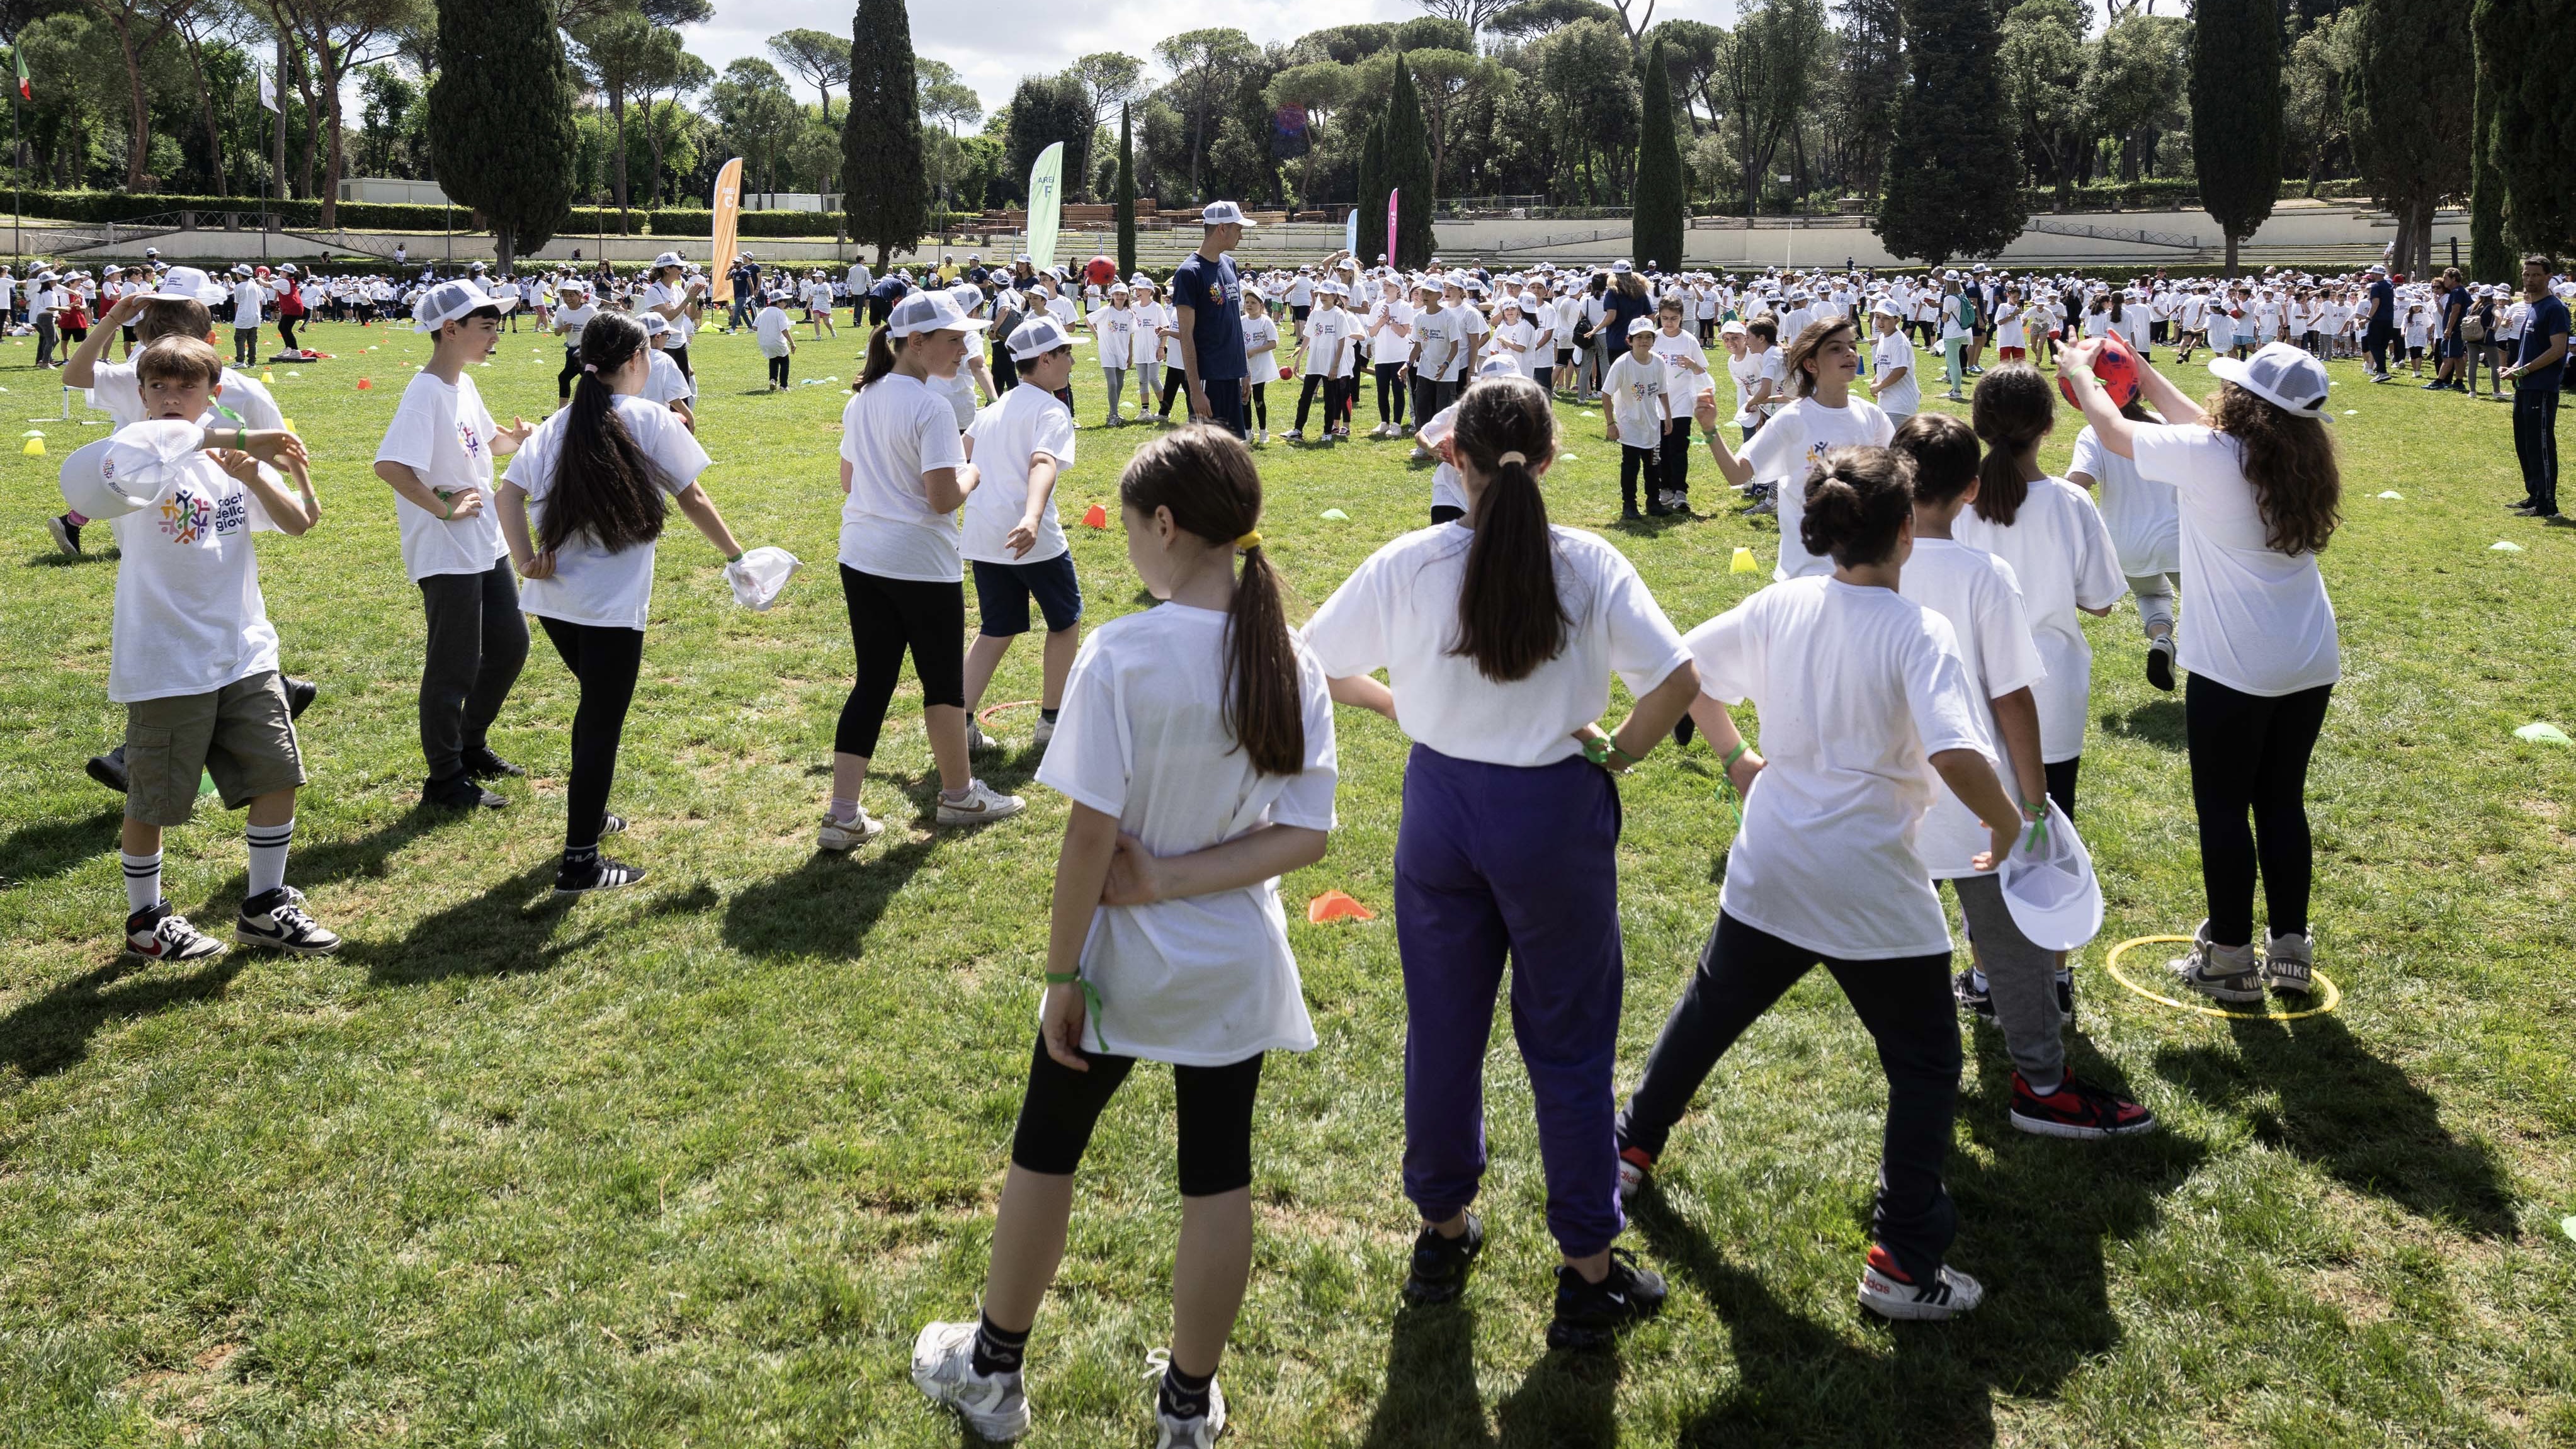 Nuovi Giochi della Gioventù, in tutta Italia l'anteprima dell'iniziativa che porterà lo sport a scuola. Abodi: "Percorso sportivo e di alfabetizzazione civica"